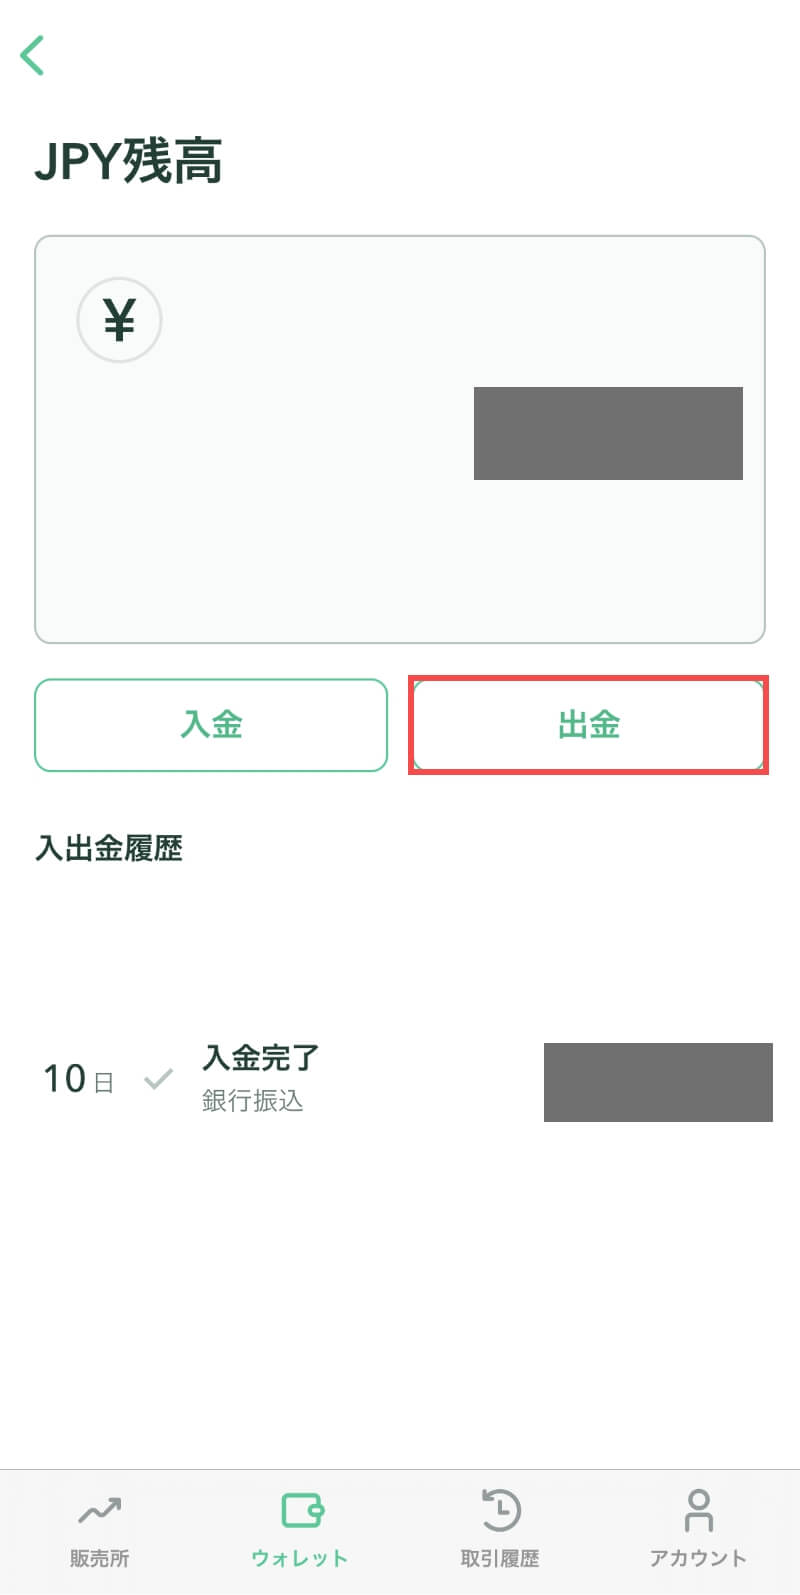 コインチェックアプリのJPY(日本円)残高画面